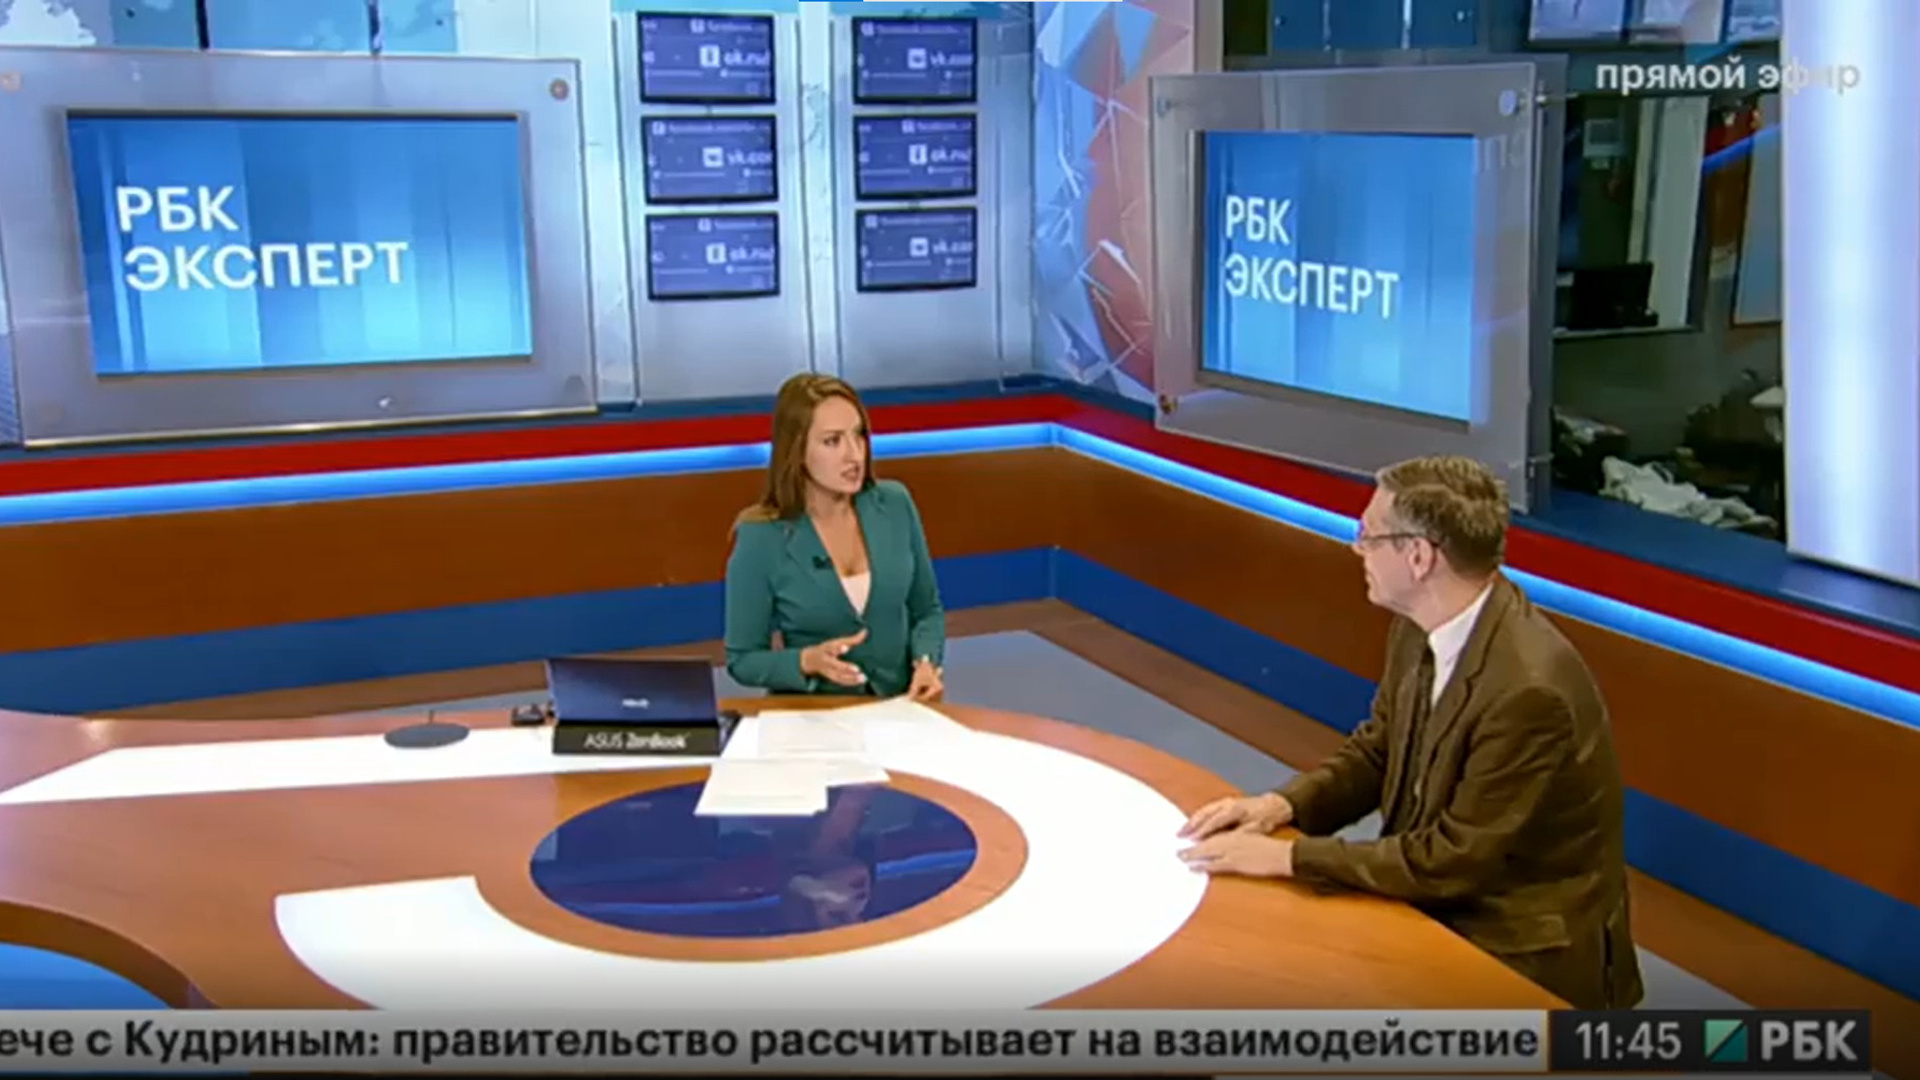 В Новосибирске перестал частично вещать телеканал РБК